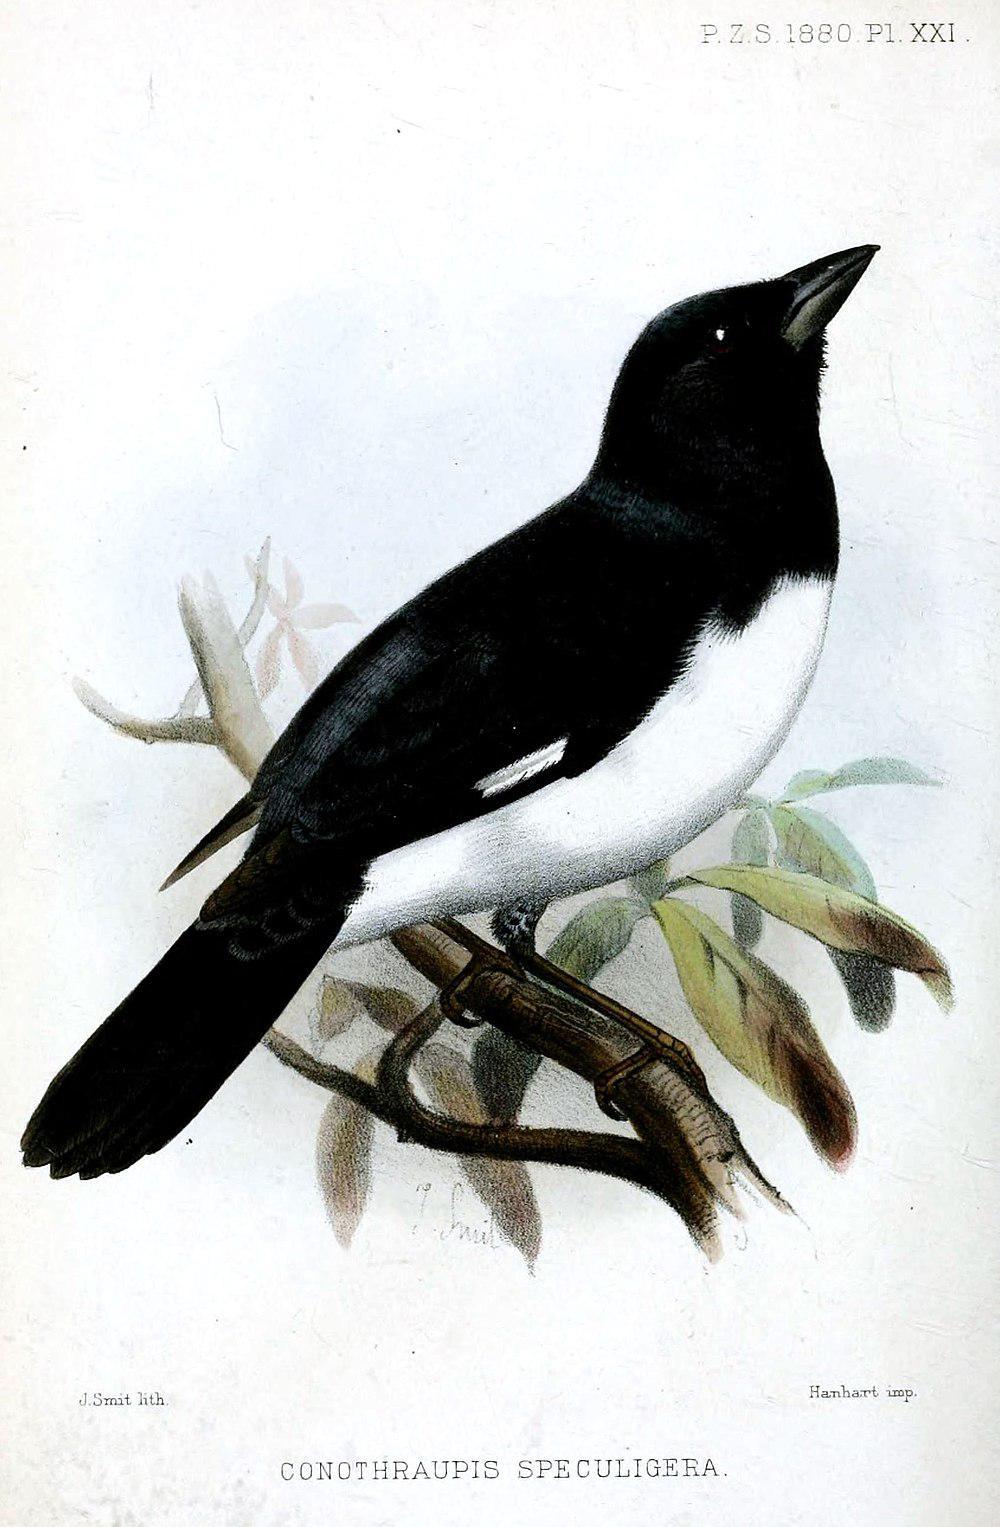 黑白唐纳雀 / Black-and-white Tanager / Conothraupis speculigera